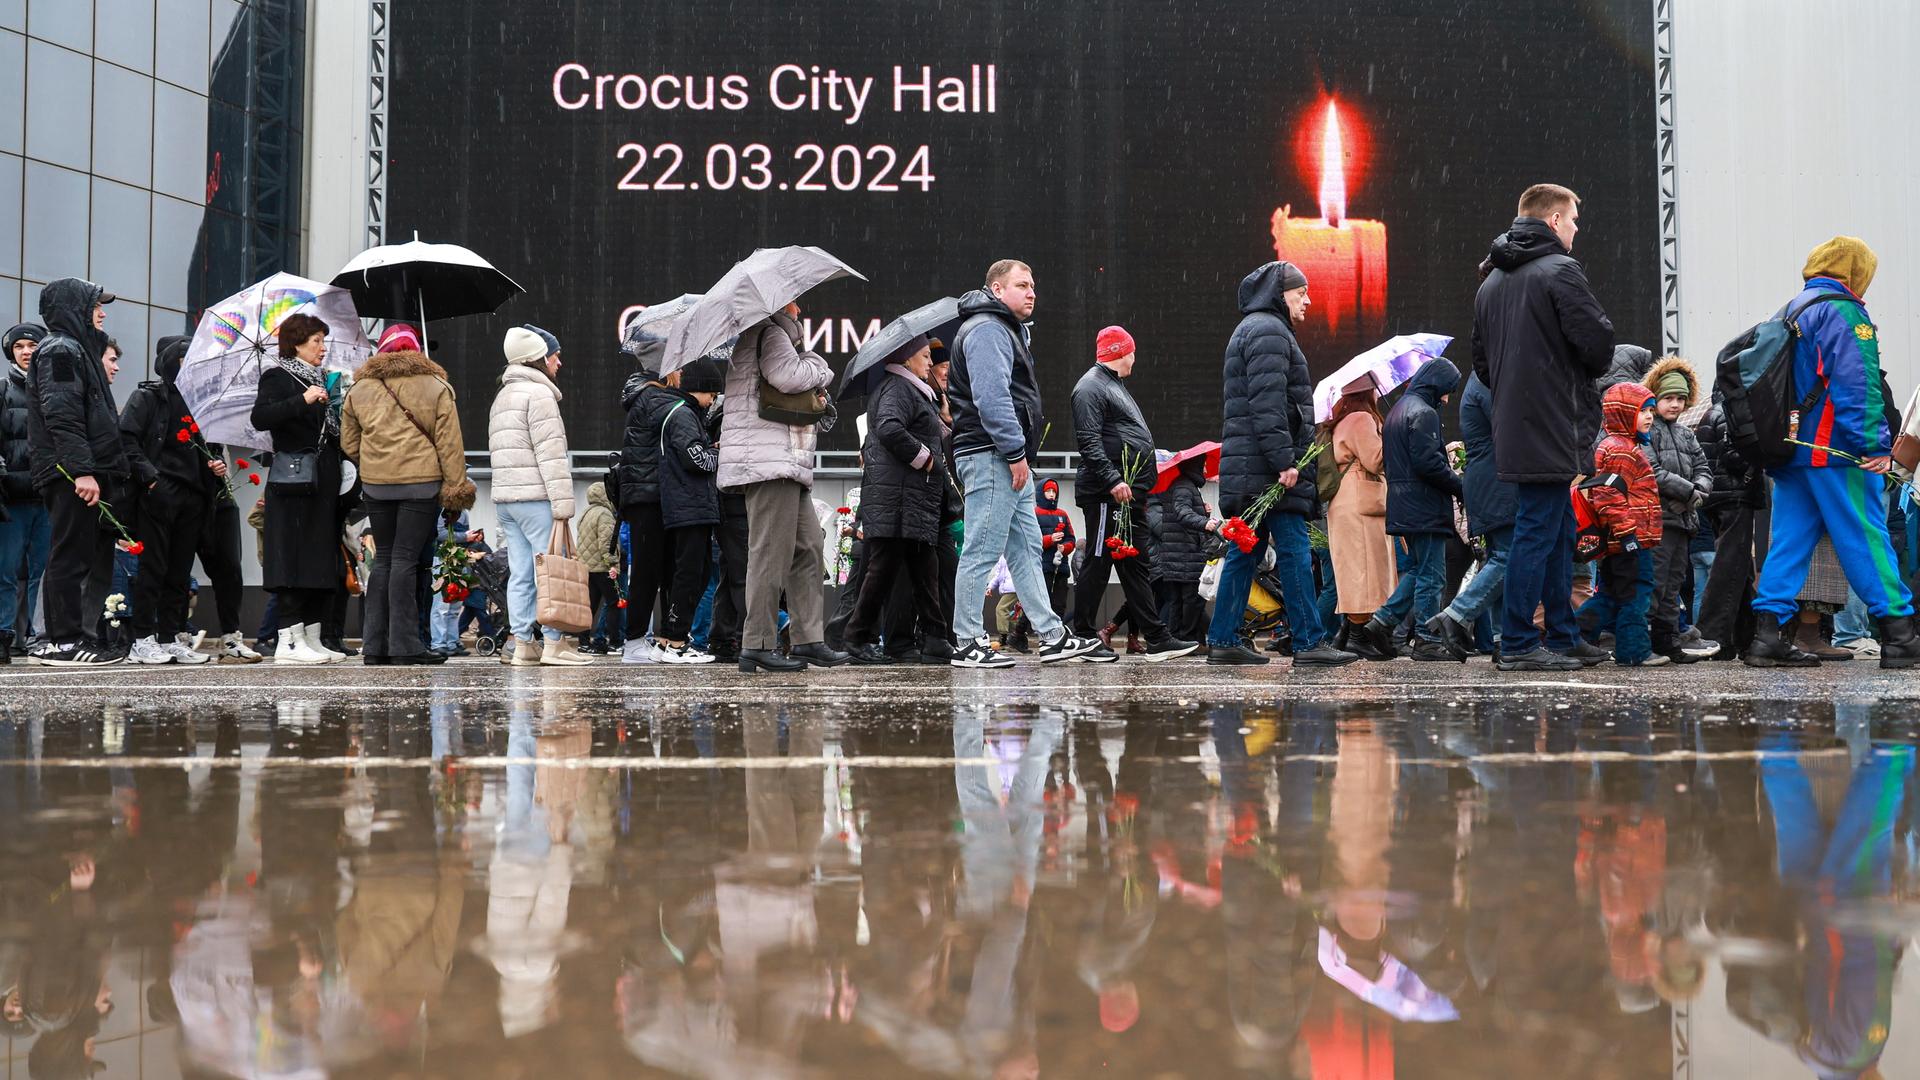 Menschen bringen Blumen und Kerzen zur Crocus City Hall nahe Moskau. DIESES FOTO WIRD VON DER RUSSISCHEN STAATSAGENTUR TASS ZUR VERFÜGUNG GESTELLT. 